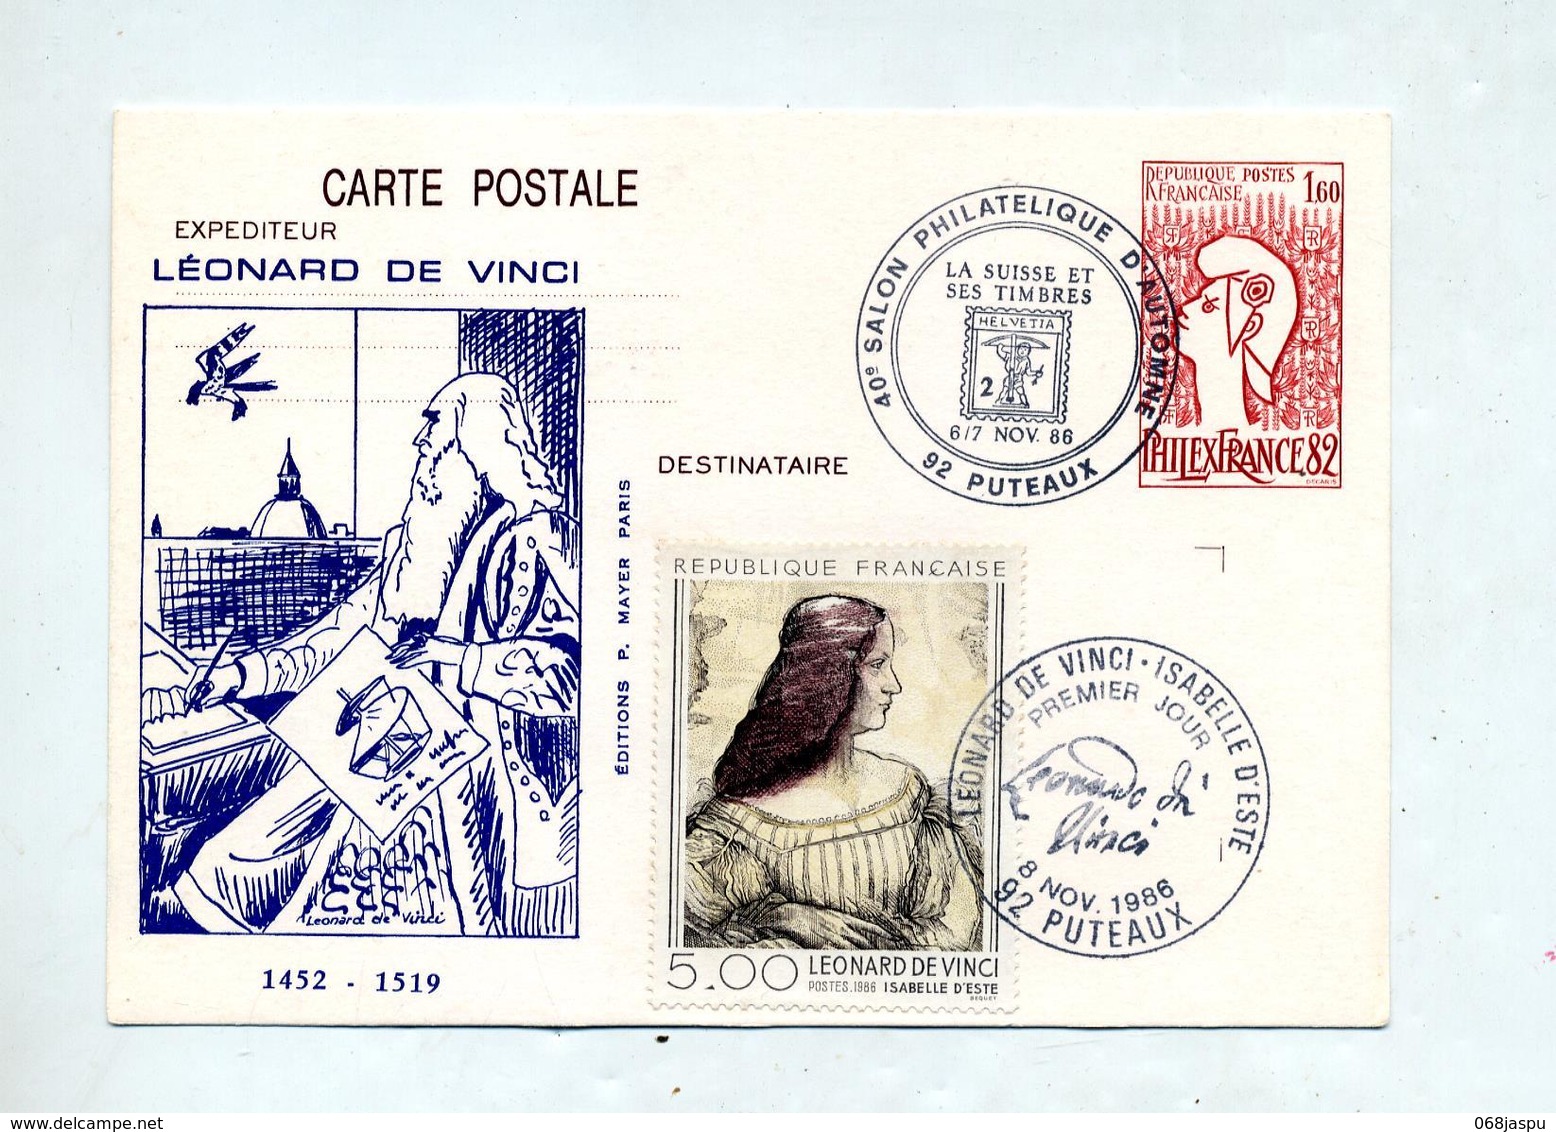 Carte Postale 1.60 Philexfrance Cachet Puteaux Salon Suisse + Puteaux De Vinci + Fdc De Vinci Illustré - Overprinter Postcards (before 1995)